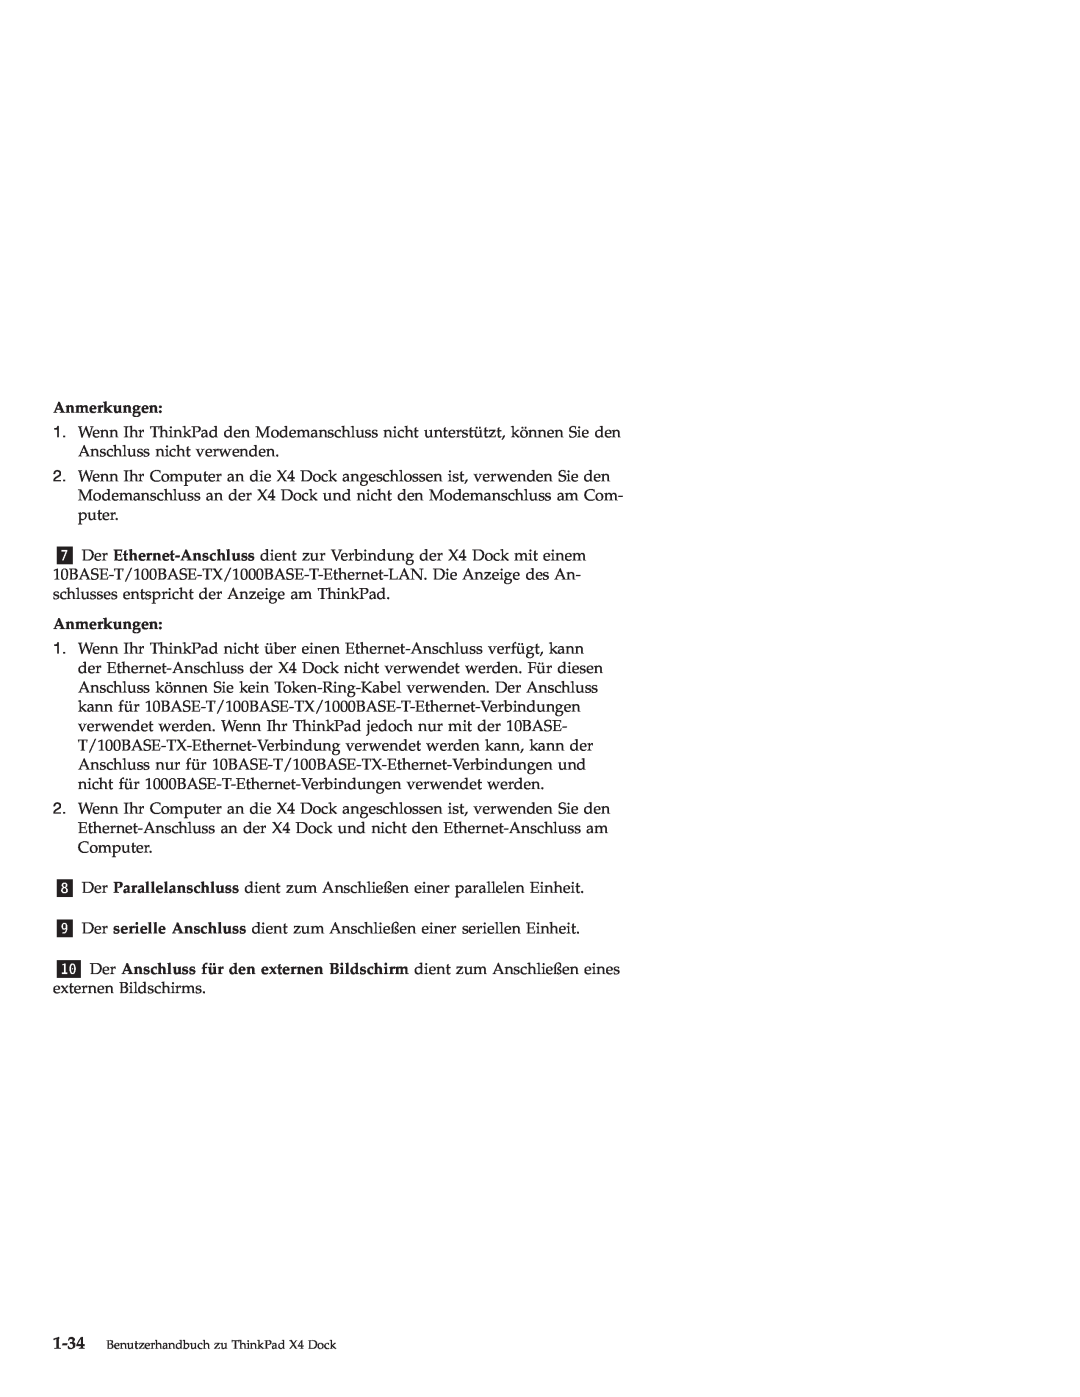 IBM manual Anmerkungen, Benutzerhandbuch zu ThinkPad X4 Dock 